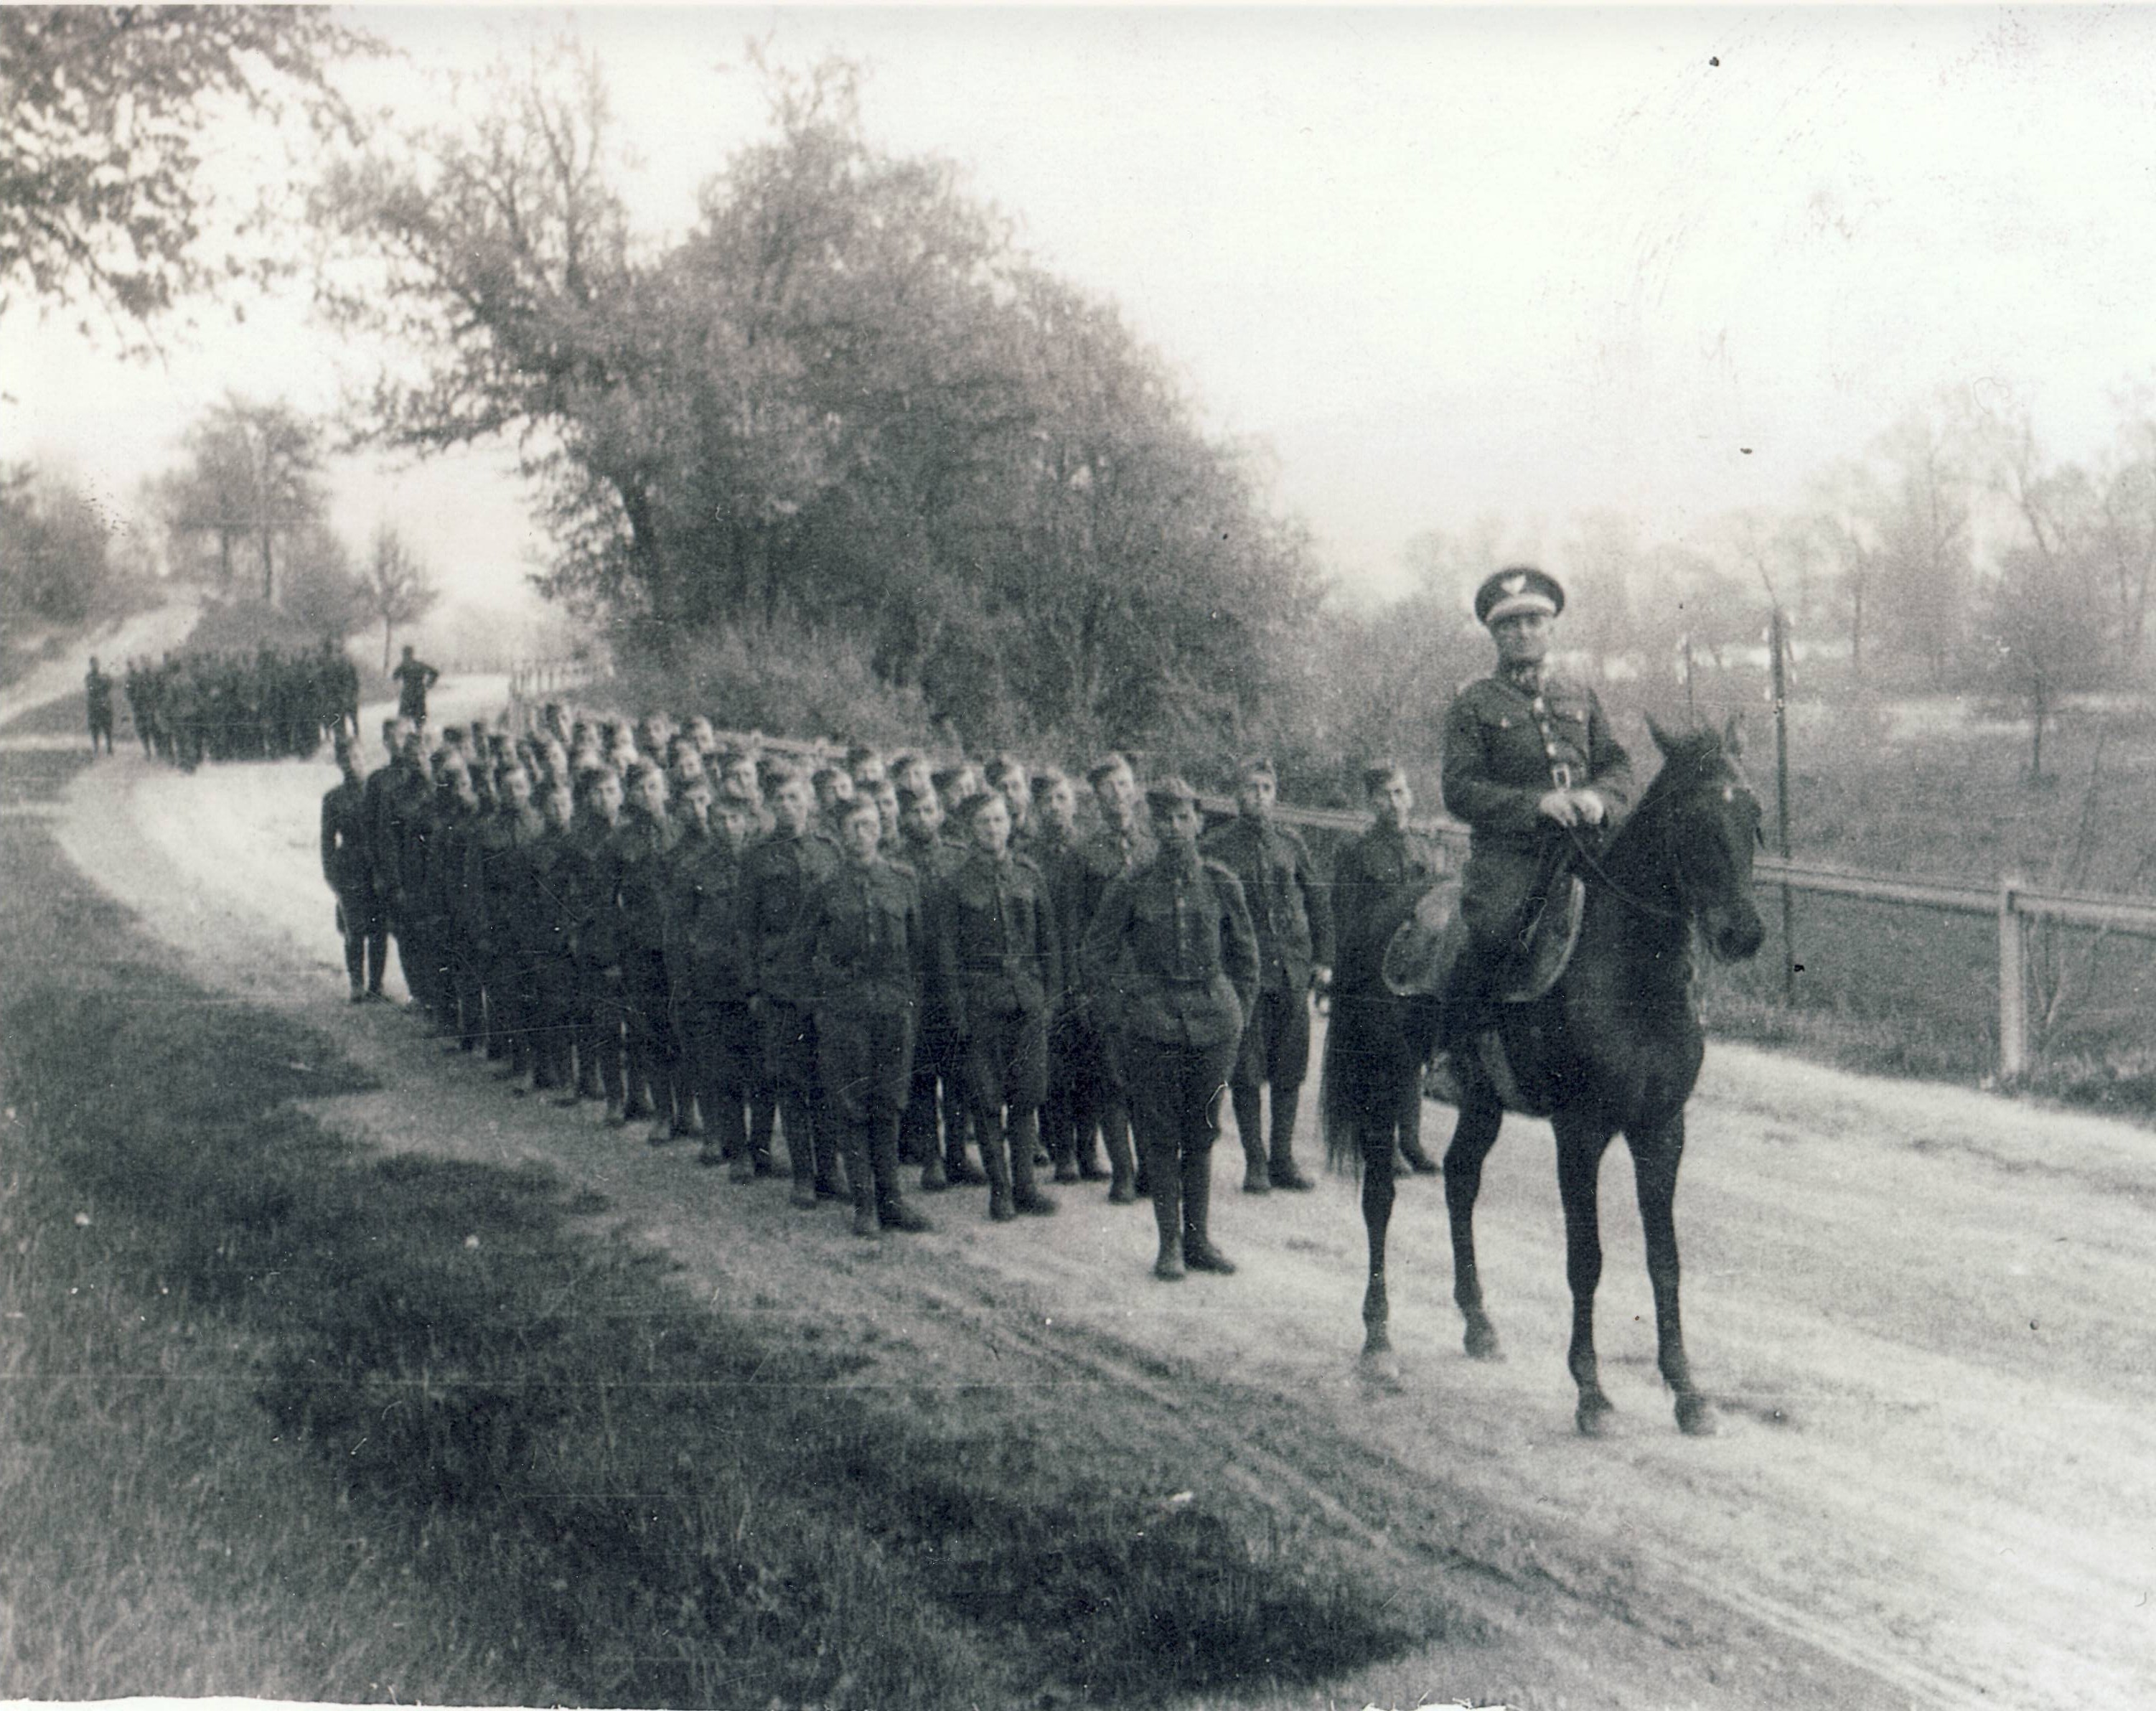 Work Brigade 1941 in Hummene standing behind a horse